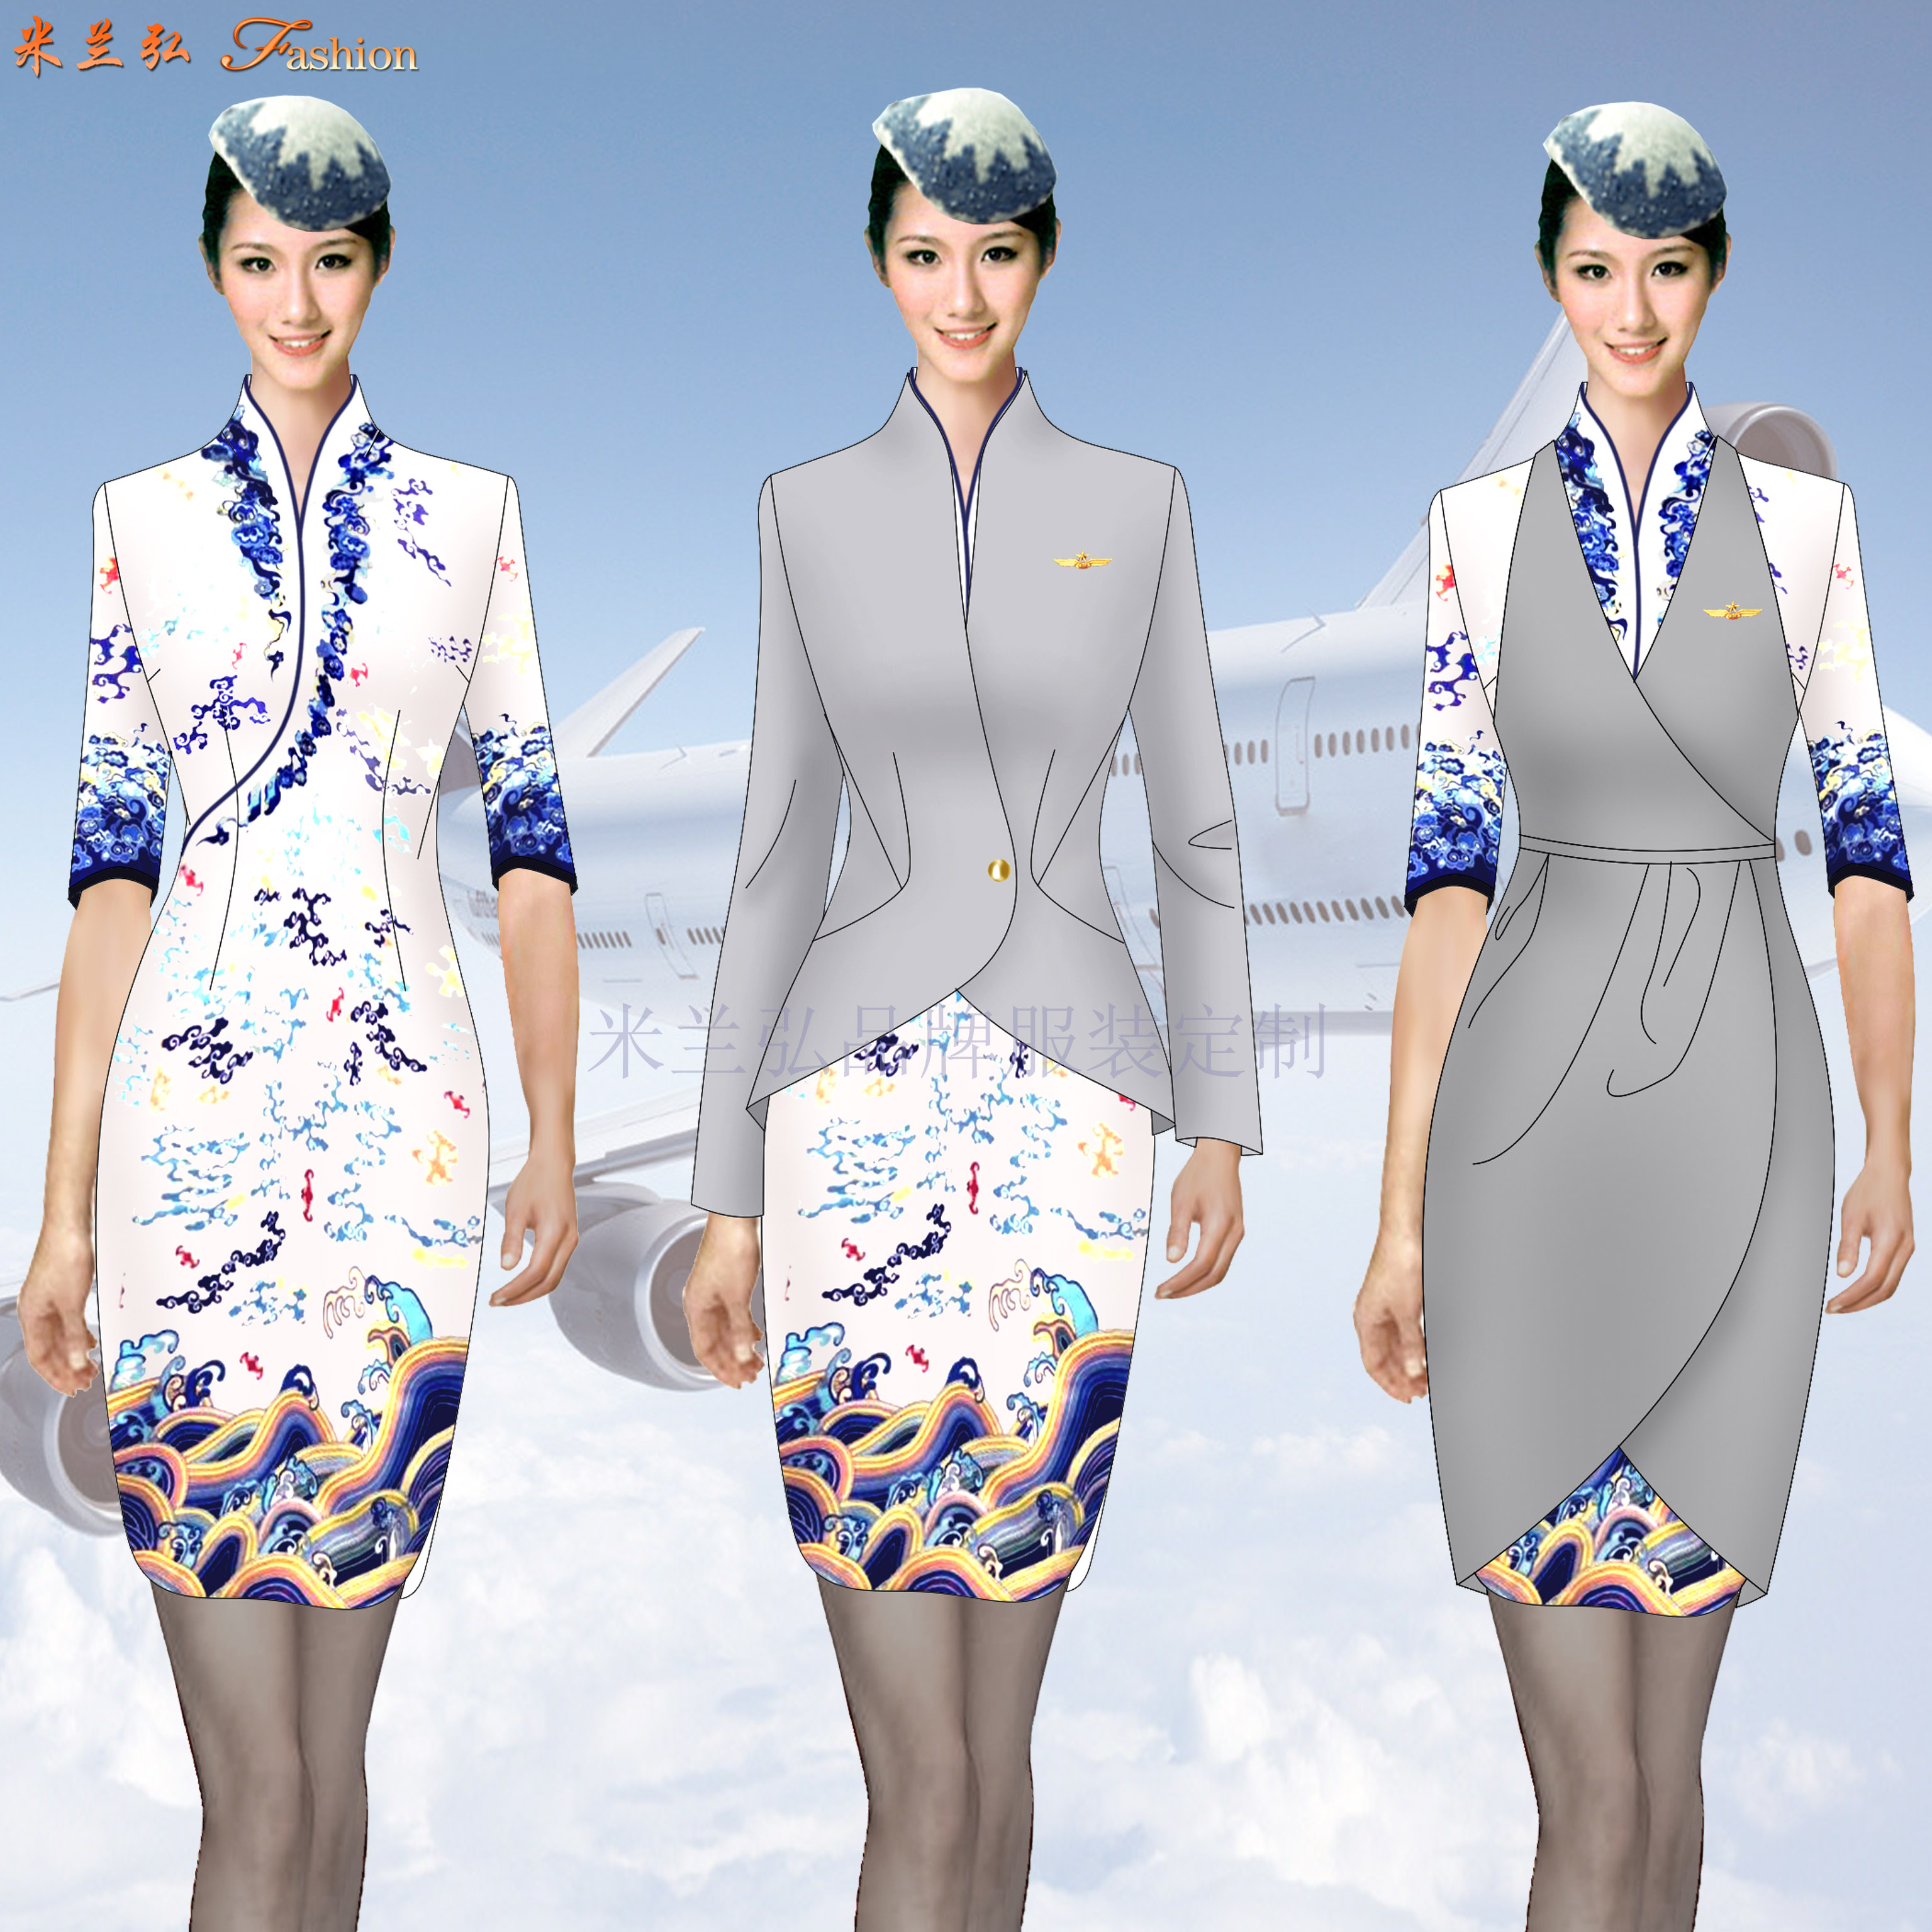 空乘職業裝-定做空姐職業裝女裝套裝-米蘭弘服裝-5